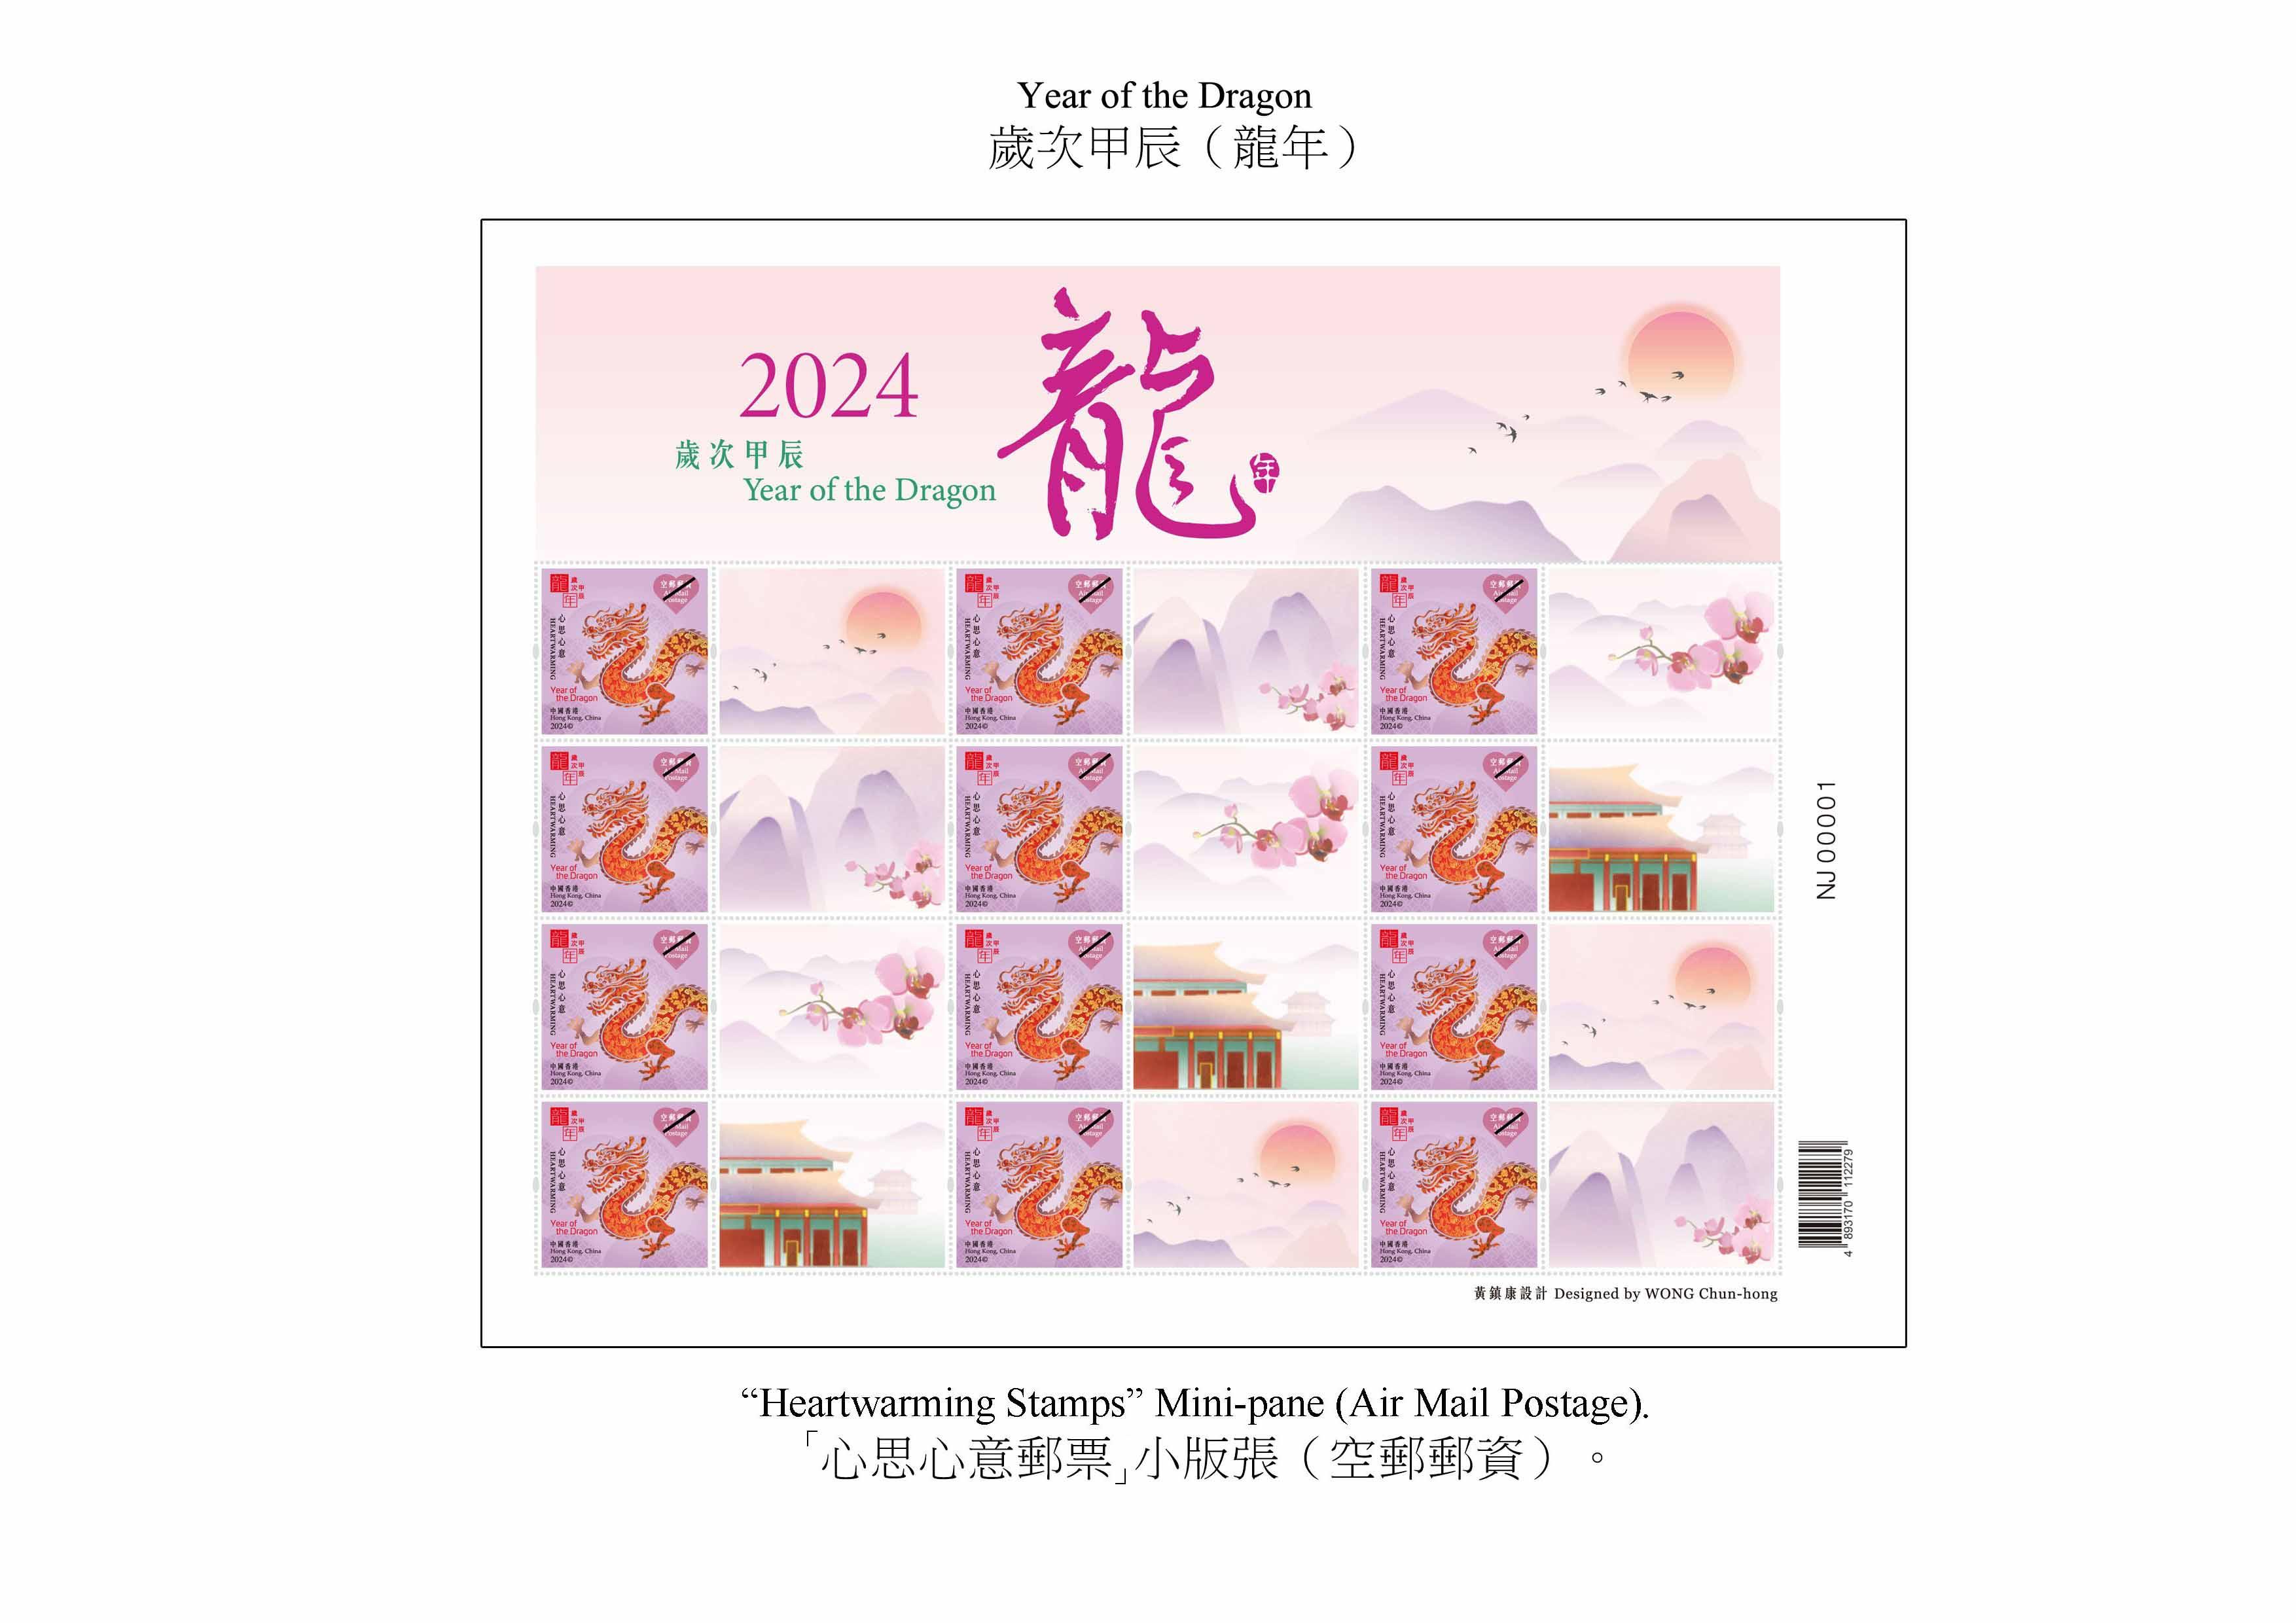 香港邮政二○二四年一月五日（星期五）发行以「岁次甲辰（龙年）」为题的特别邮票及相关集邮品。图示「心思心意邮票」小版张 （空邮邮资）。